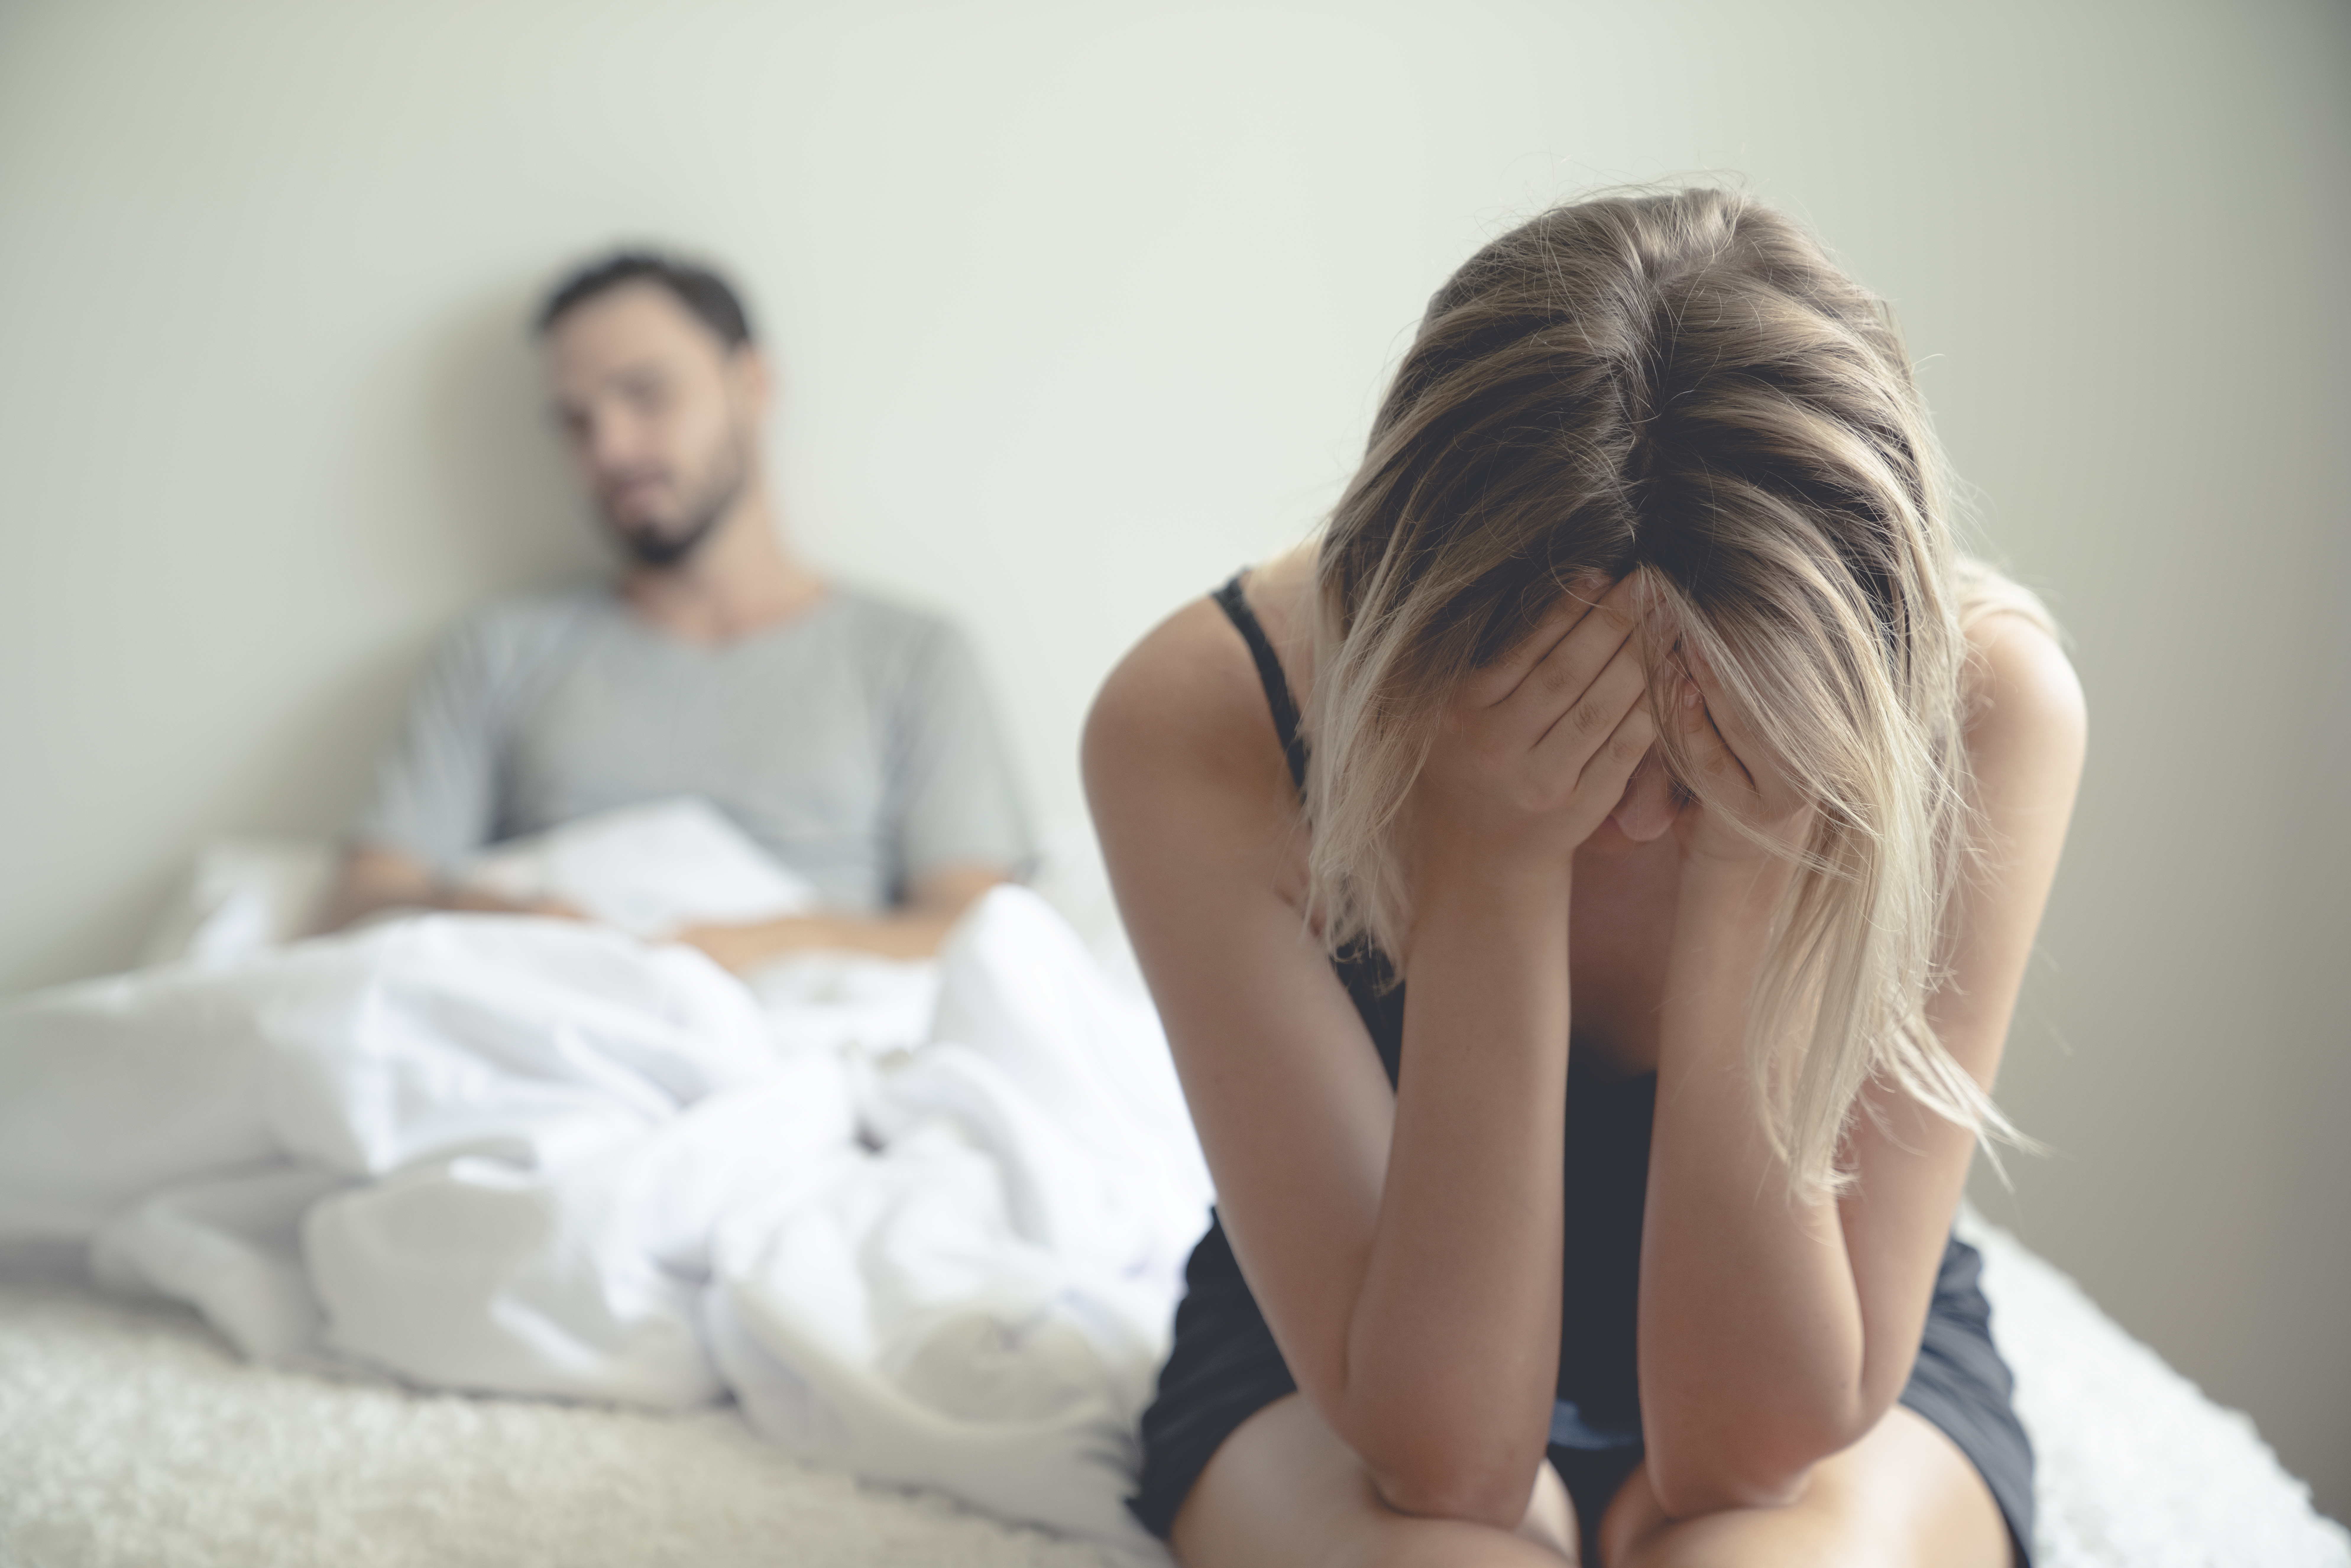 Eine frustrierte und traurige Frau, die auf einem Bett sitzt und mit den Händen ihr Gesicht bedeckt, während im Hintergrund ein Mann unter der Decke zu sehen ist | Quelle: Getty Images